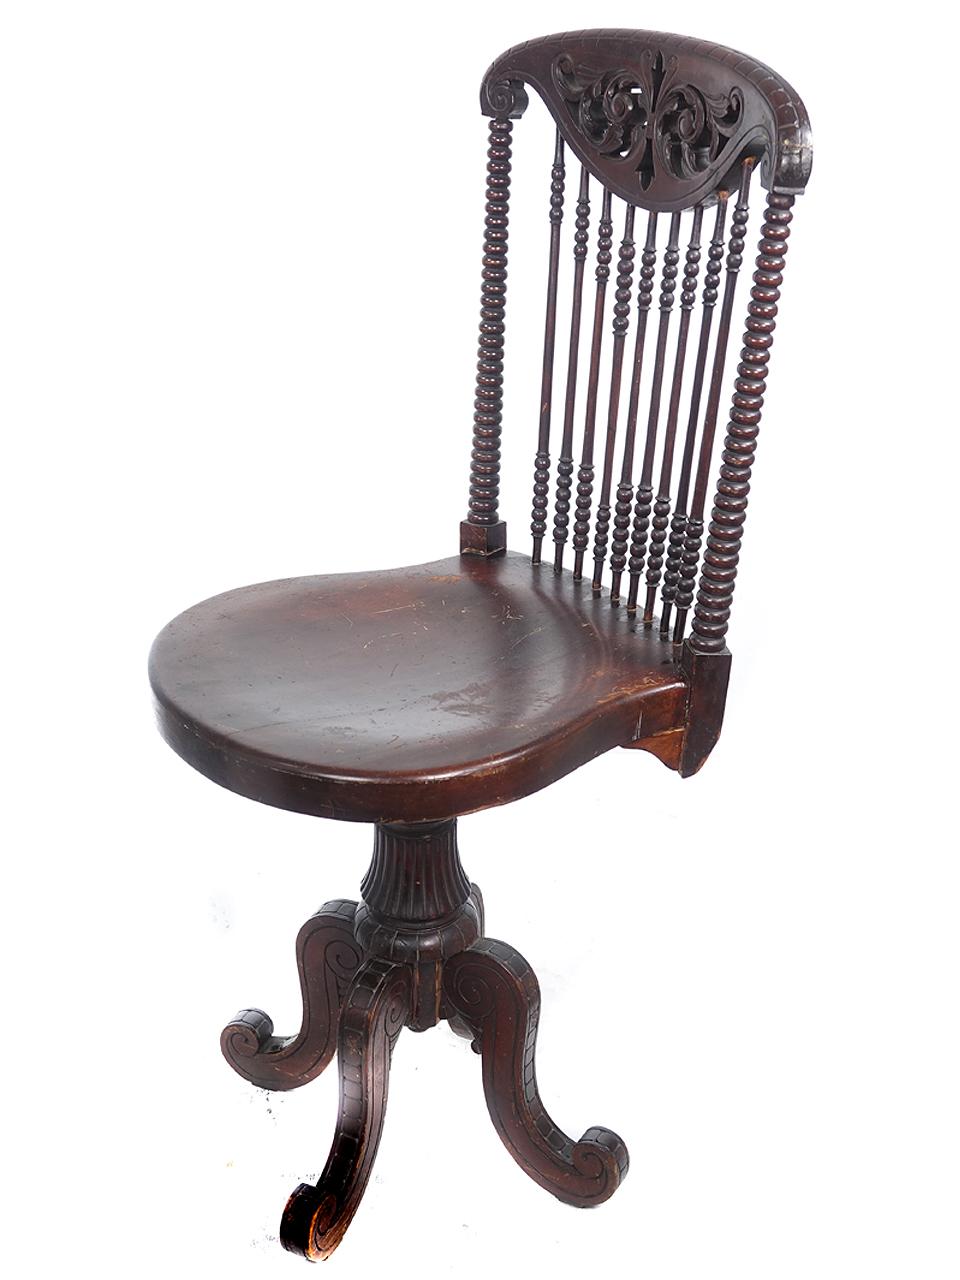 Ce fauteuil pivotant est un peu orné, mais il est tout de même léger. La finition du bois est originale avec une couleur rougeâtre foncée et une légère patine vieillie. Curieusement, je suis passé 1000 fois devant cette chaise et je n'ai jamais